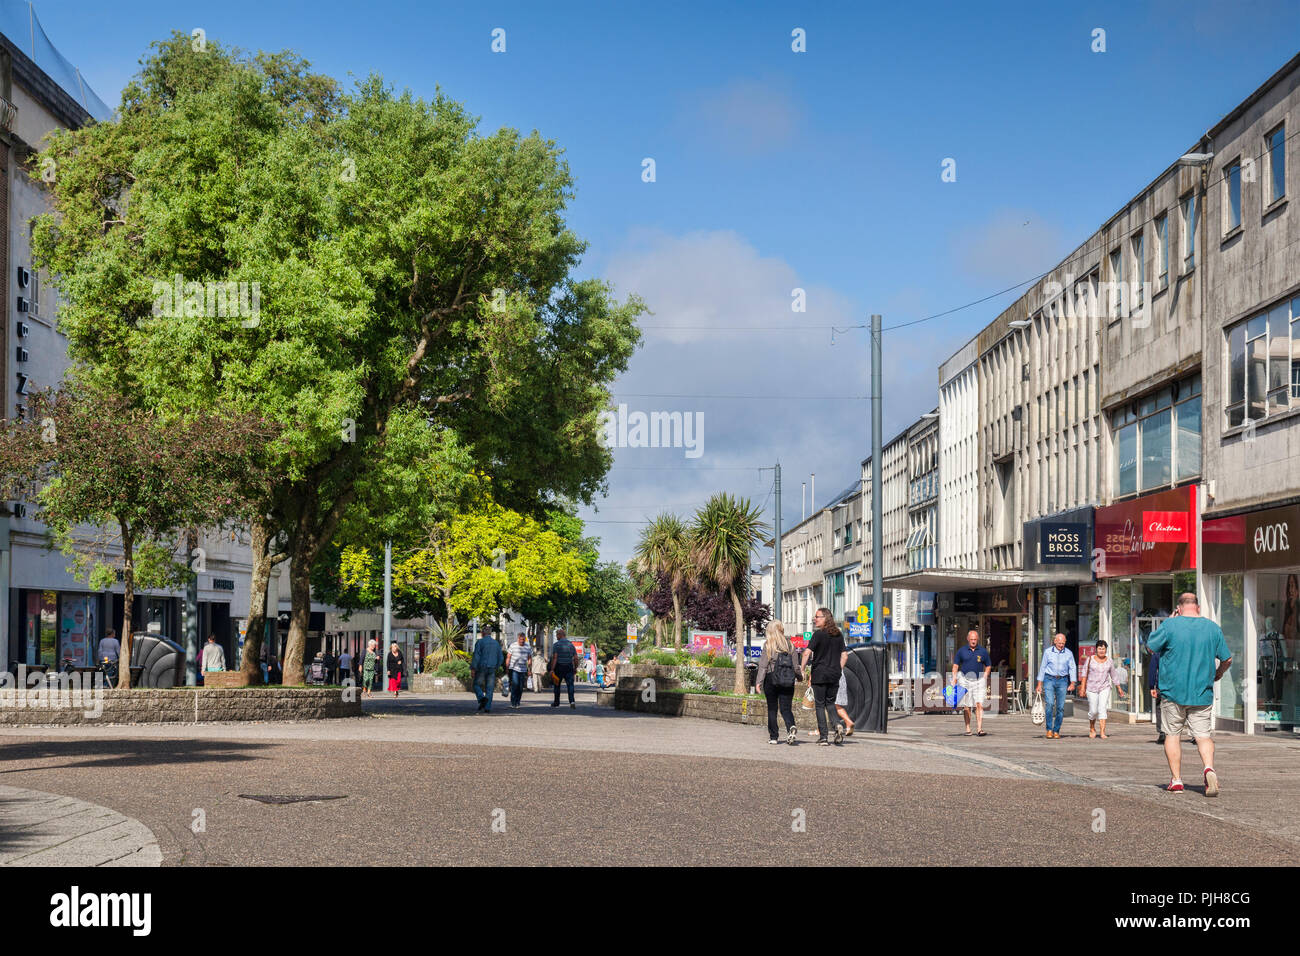 2 juin 2018 : Plymouth, Devon, UK - Shoppers à nouveau George Street sur un matin de printemps chaud et ensoleillé. Banque D'Images